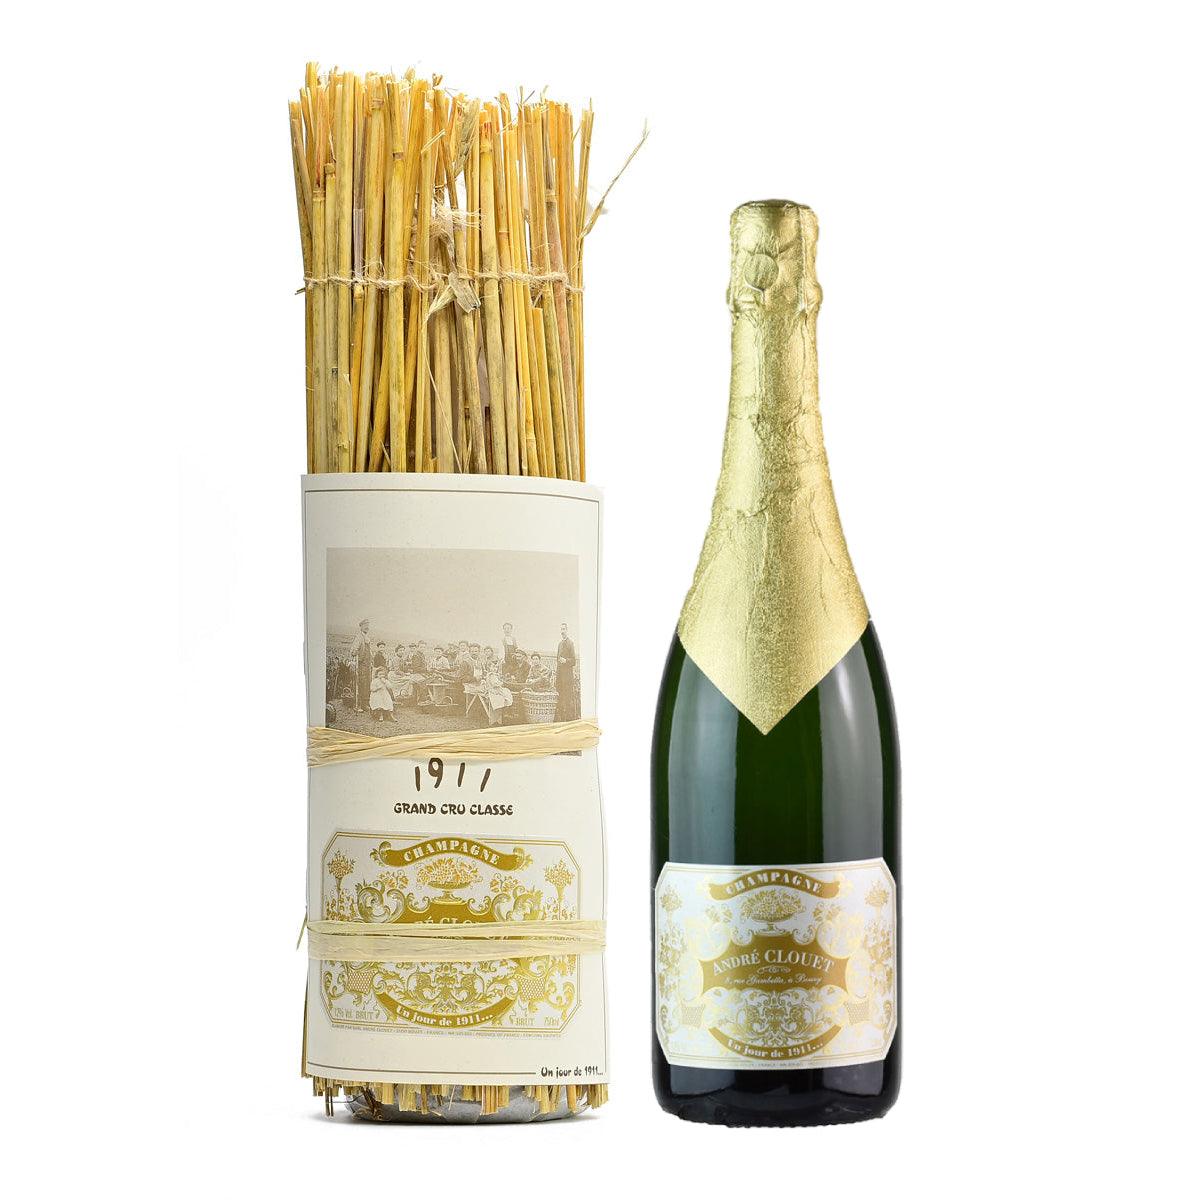 Andre Clouet Champagne Un jour de 1911... - Champagne - GDV Fine Wines® - 750ml, AG93+, Bouzy, Champagne, Champagne Andre Clouet, France, JS95, Non-Vintage, WA96, Wine Product